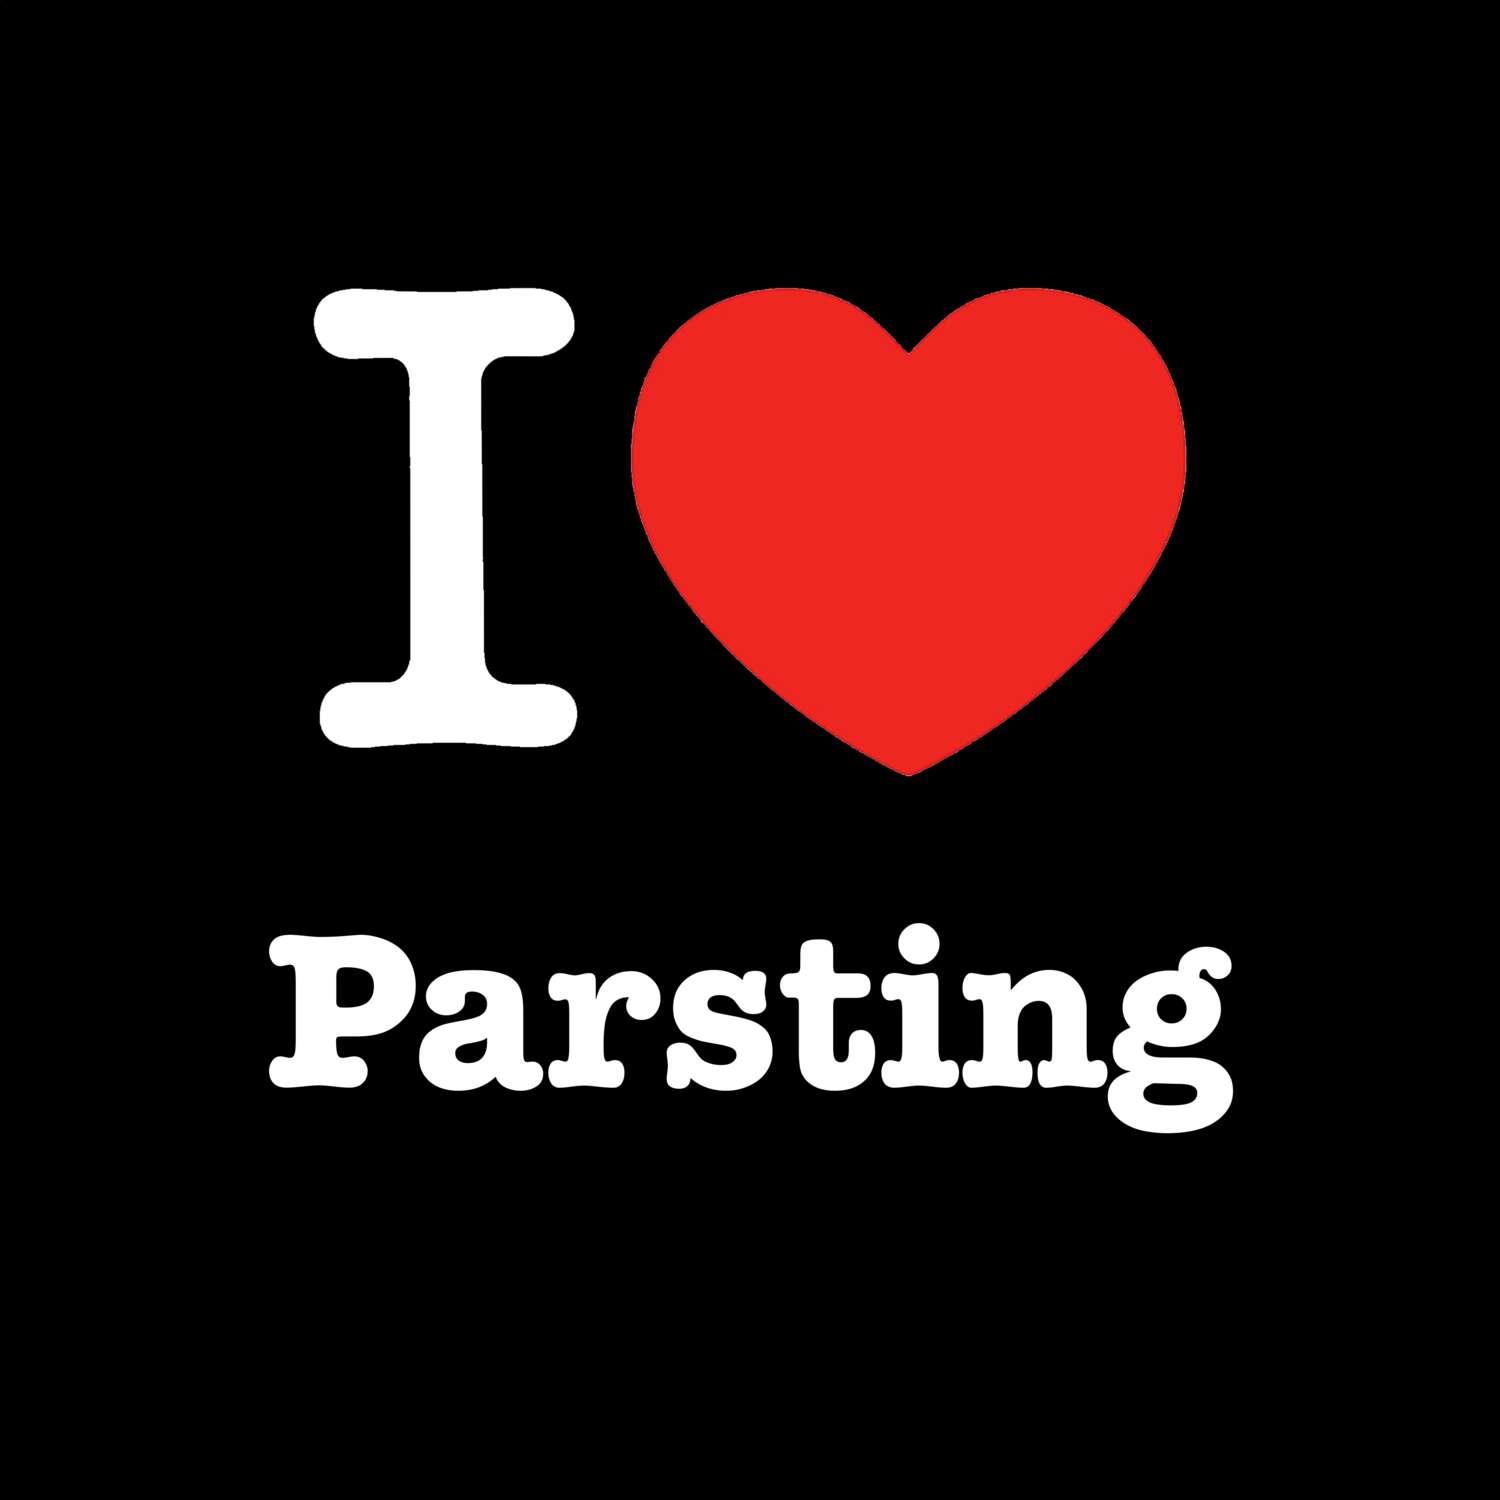 Parsting T-Shirt »I love«